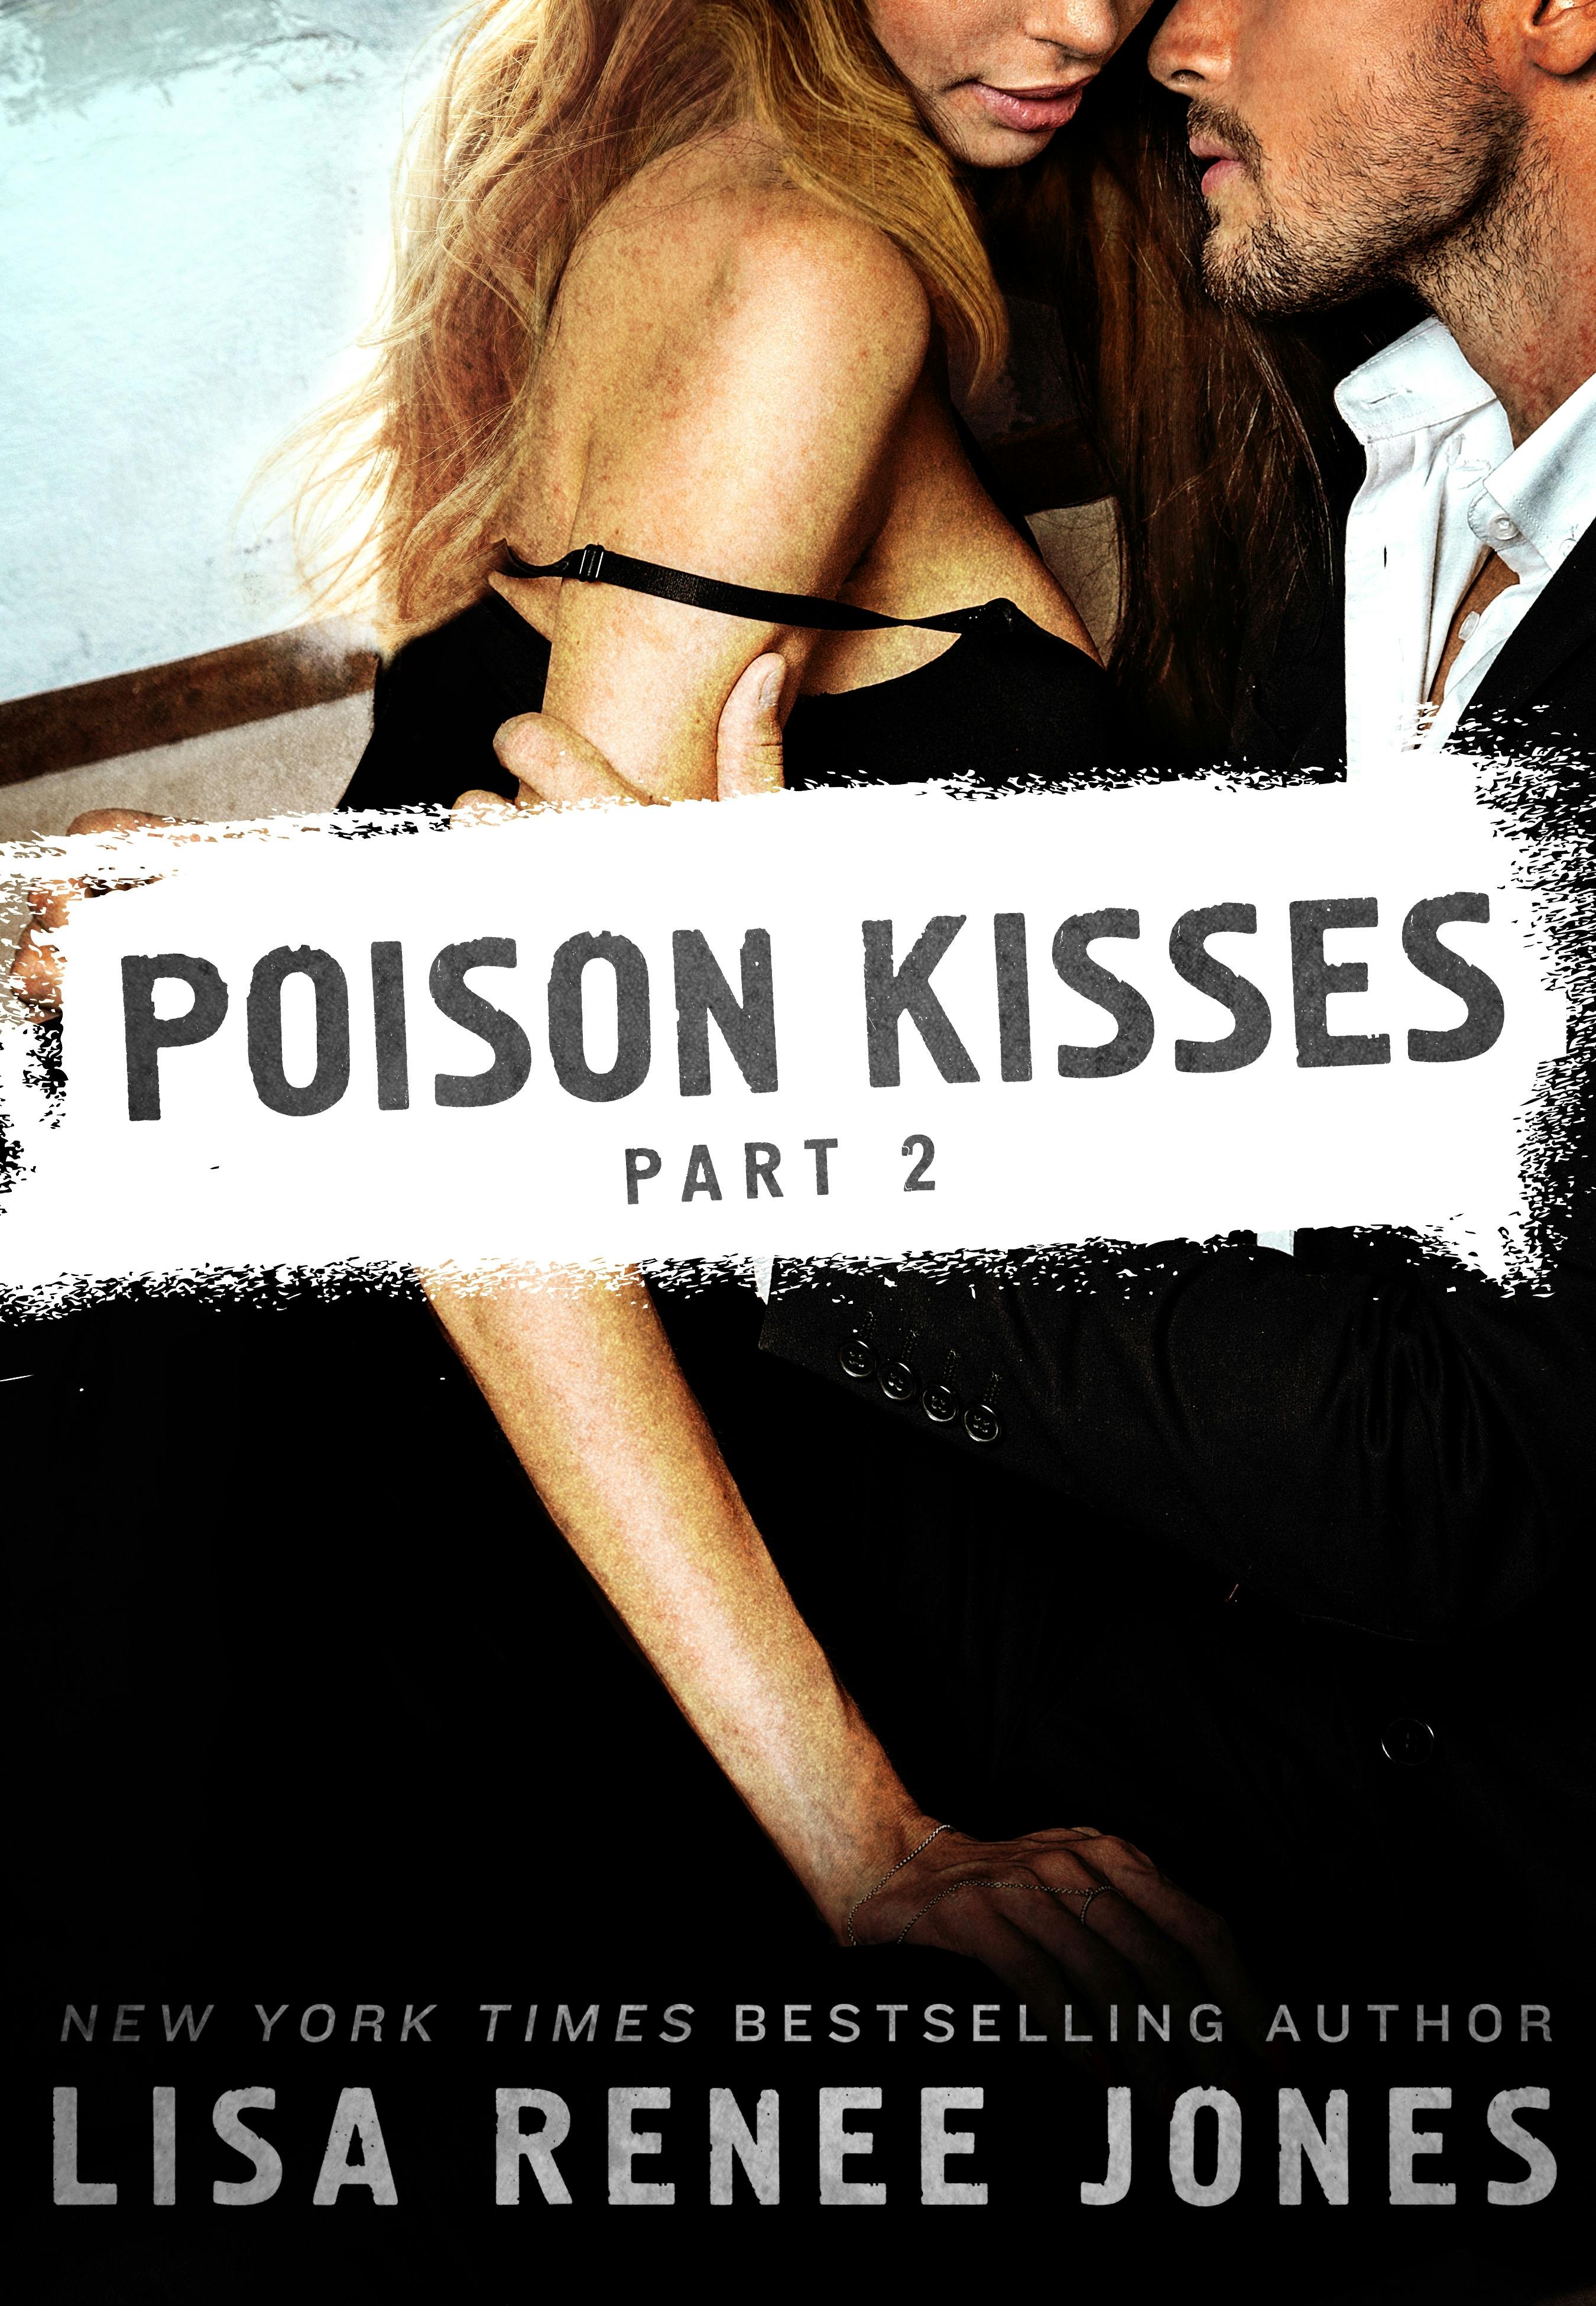 Image of Poison Kisses Part 2